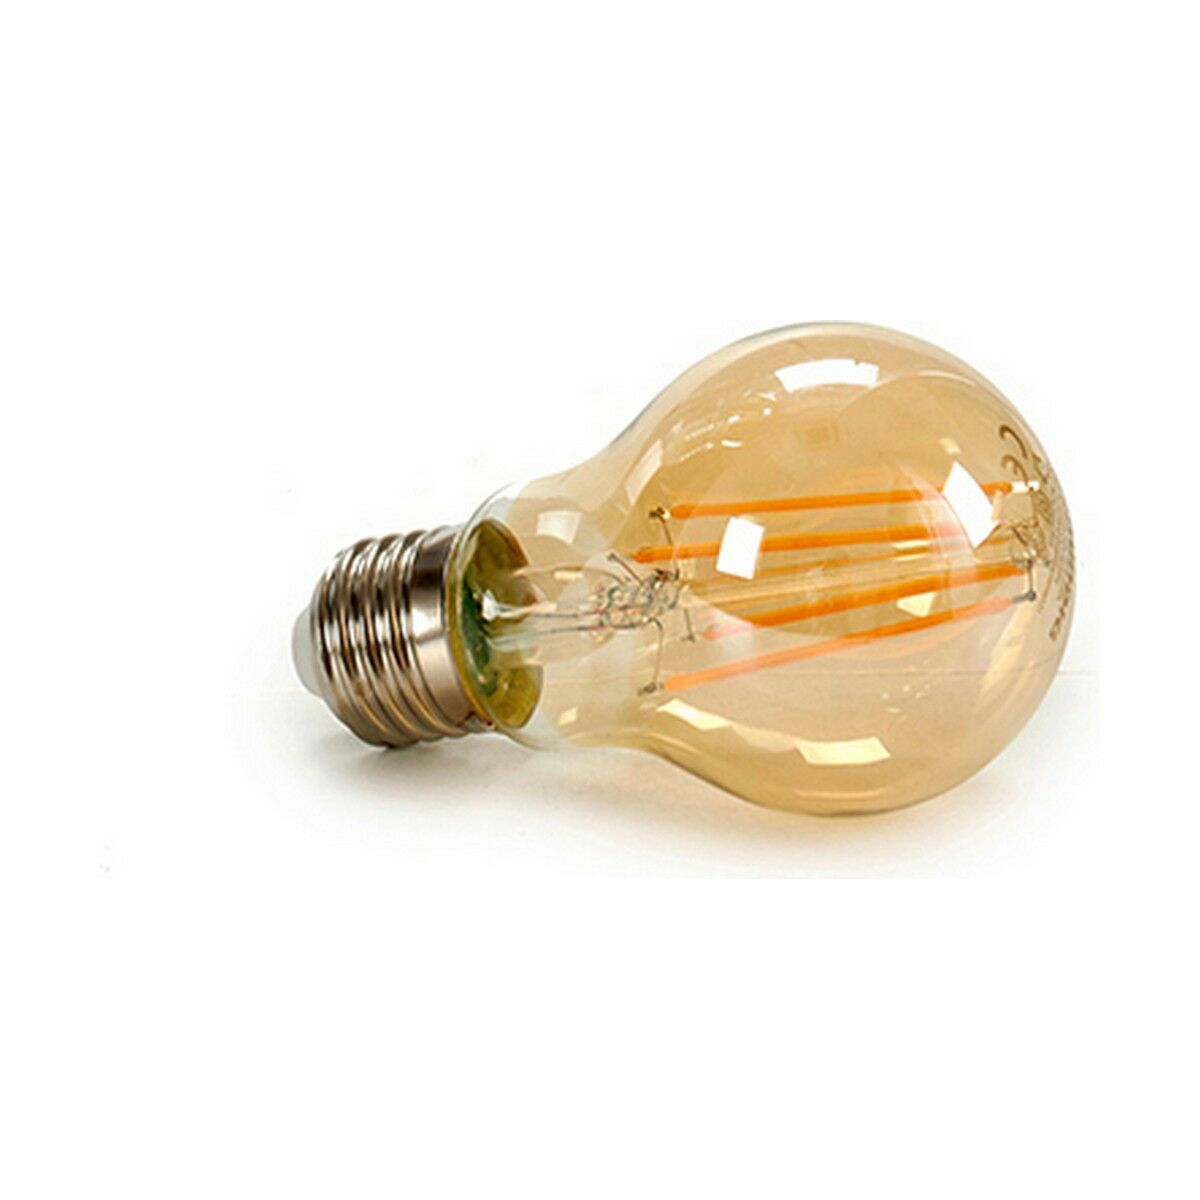 Светодиодная лампочка Grundig 8 W 2300 K E27 Янтарь 700 lm (10 штук) (6 x 10 x 6 cm)